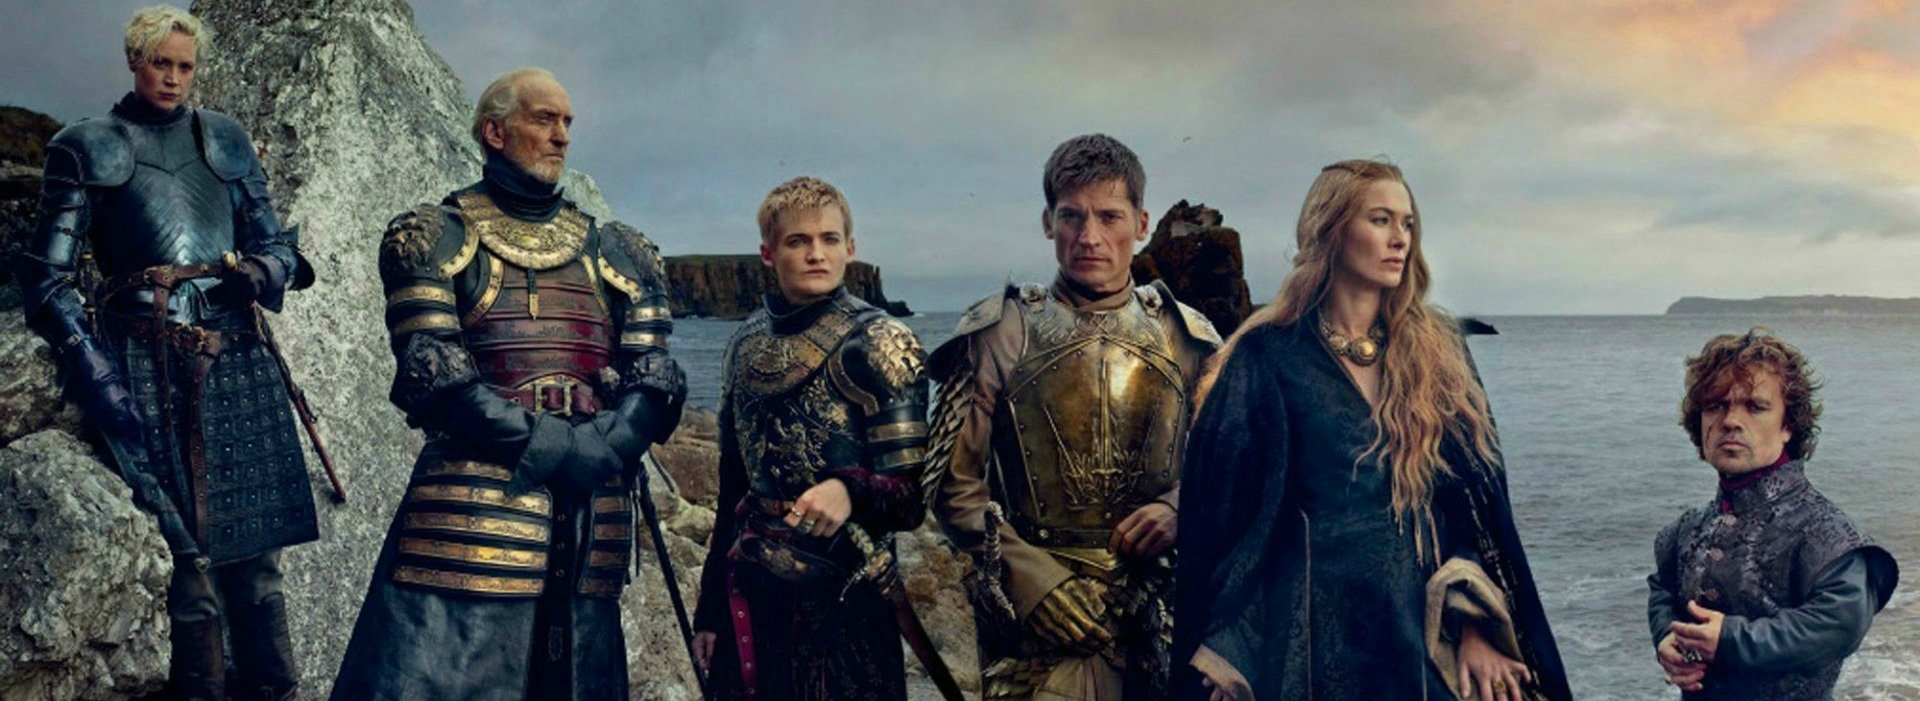 Ο “Πόλεμος των Ρόδων” που “γέννησε” το “Game of Thrones” – Ήρωες της σειράς, ιστορικά πρόσωπα  (video)